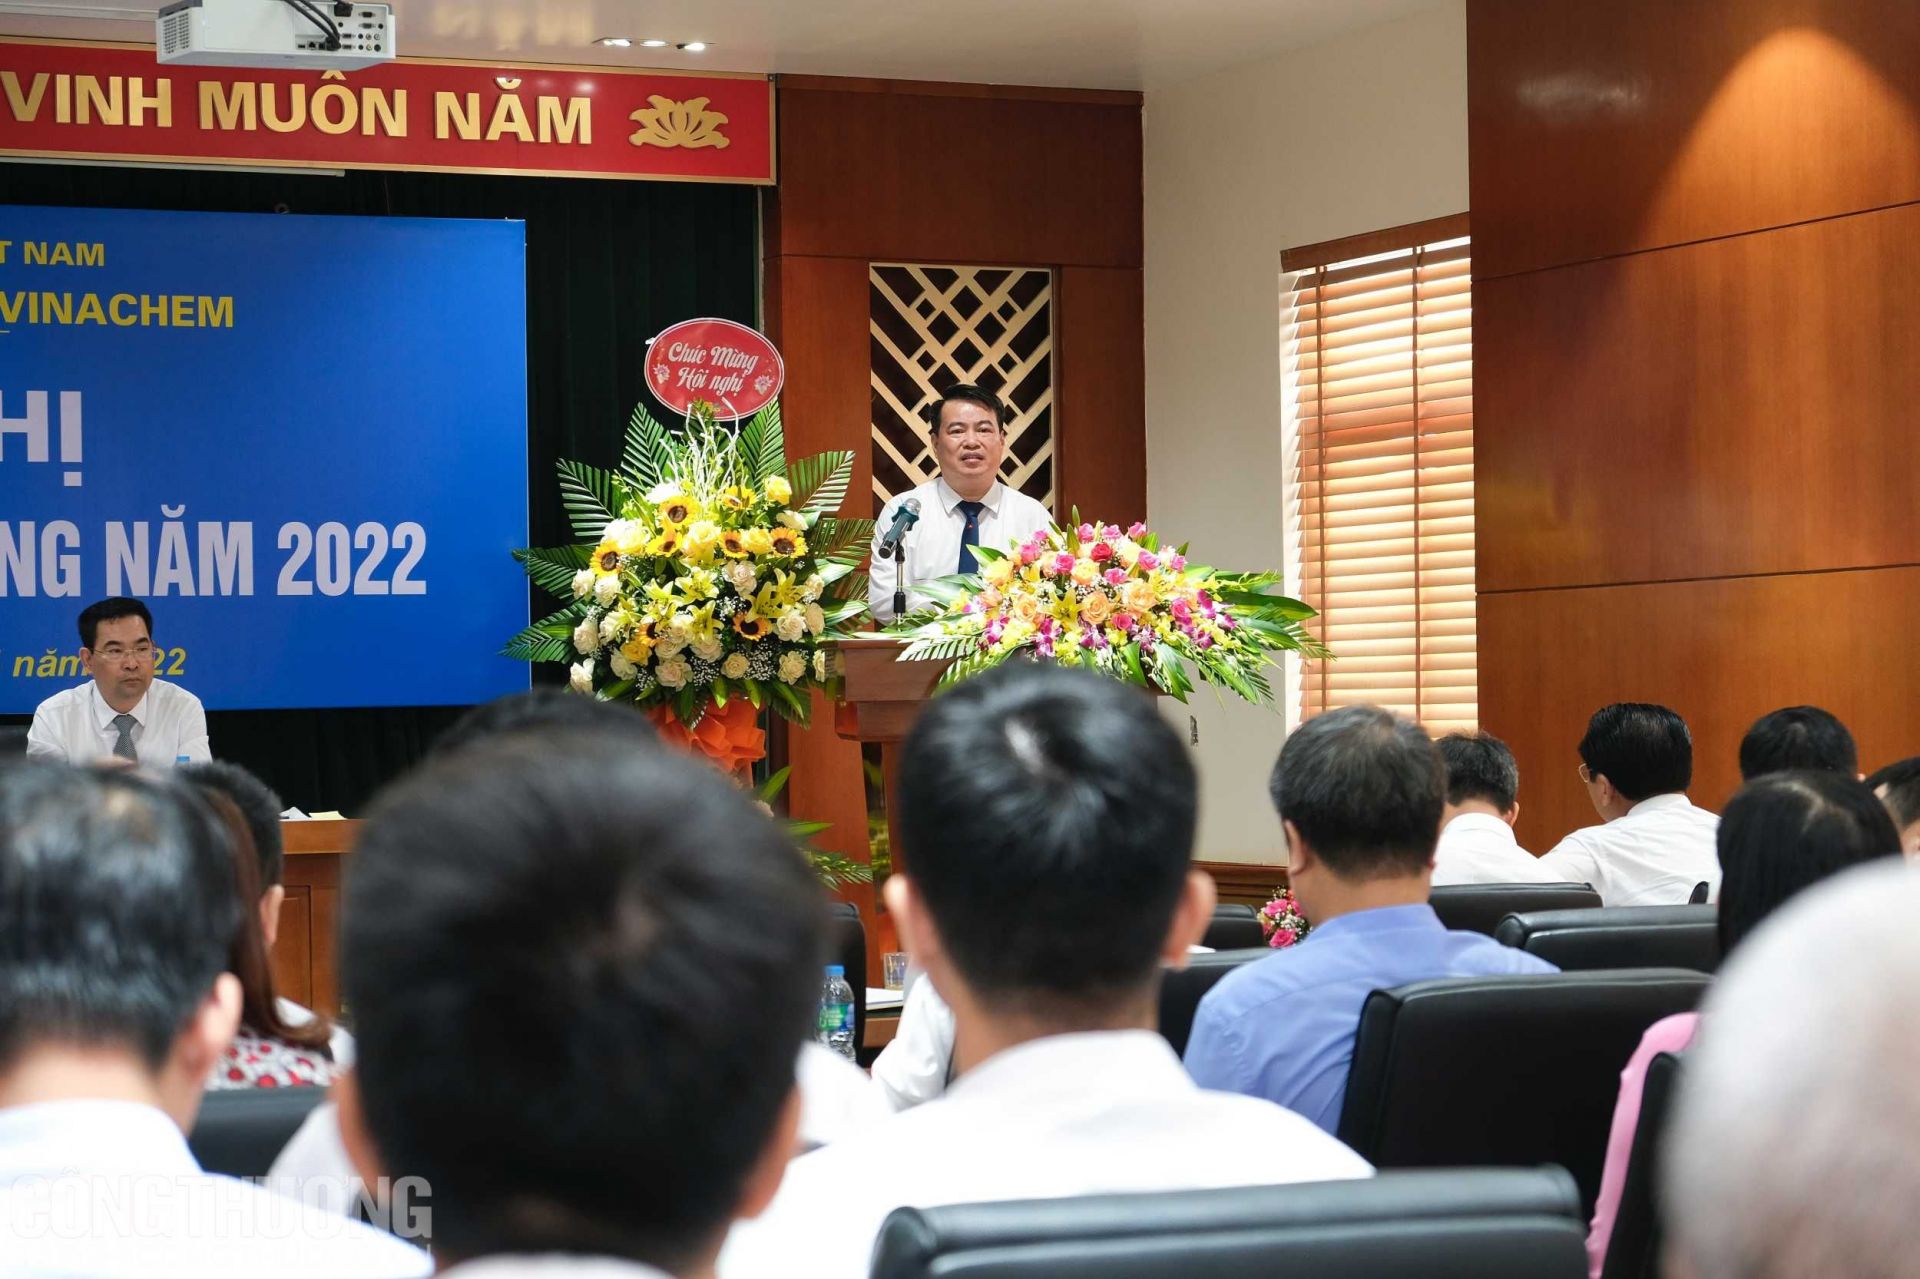 Ông Vũ Văn Bằng - Tổng Giám đốc Công ty CP DAP-Vinachem giải đáp các ý kiến, kiến nghị của người lao động